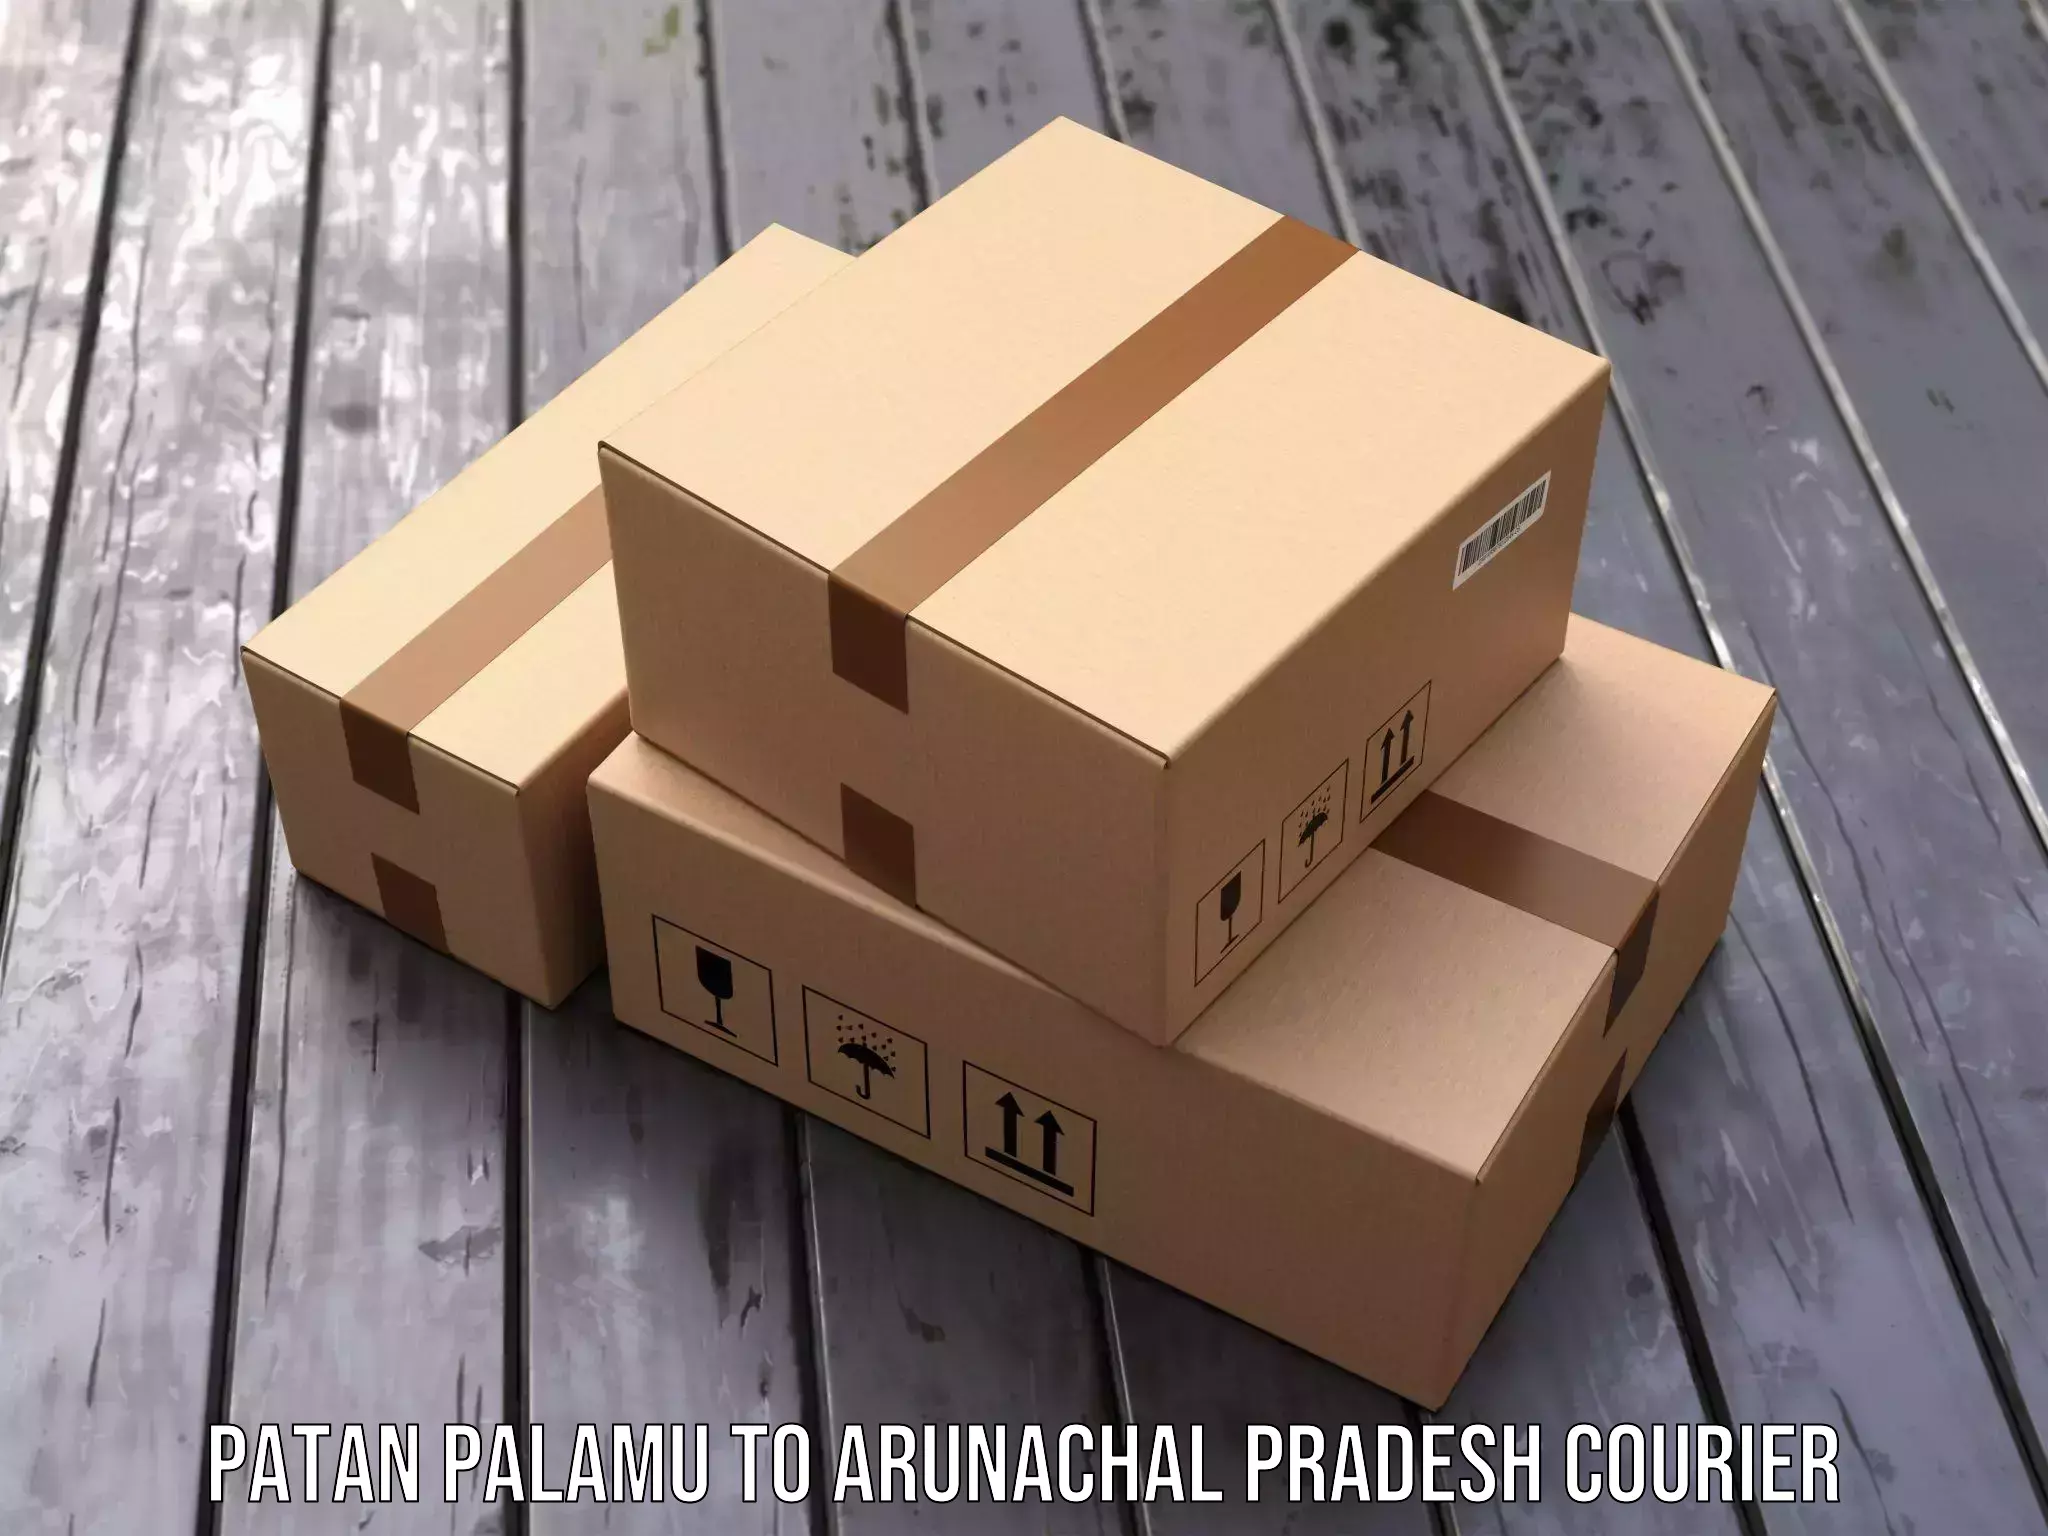 Efficient parcel transport Patan Palamu to Nirjuli